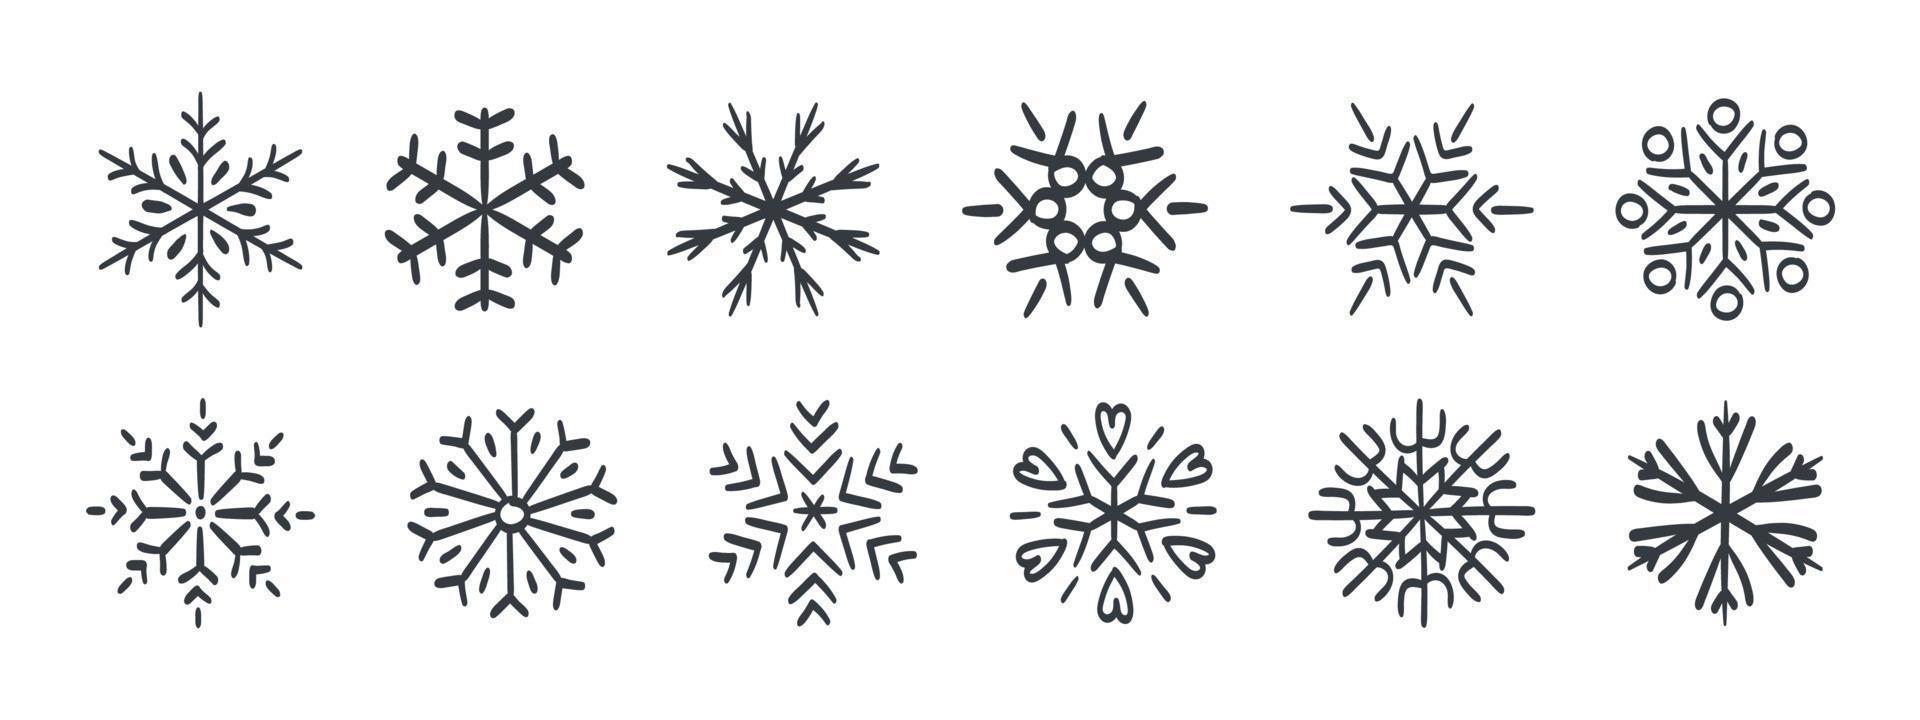 snöflingor. ritad för hand snöflingor. snöflingor ikoner av annorlunda stilar och former. vektor illustration